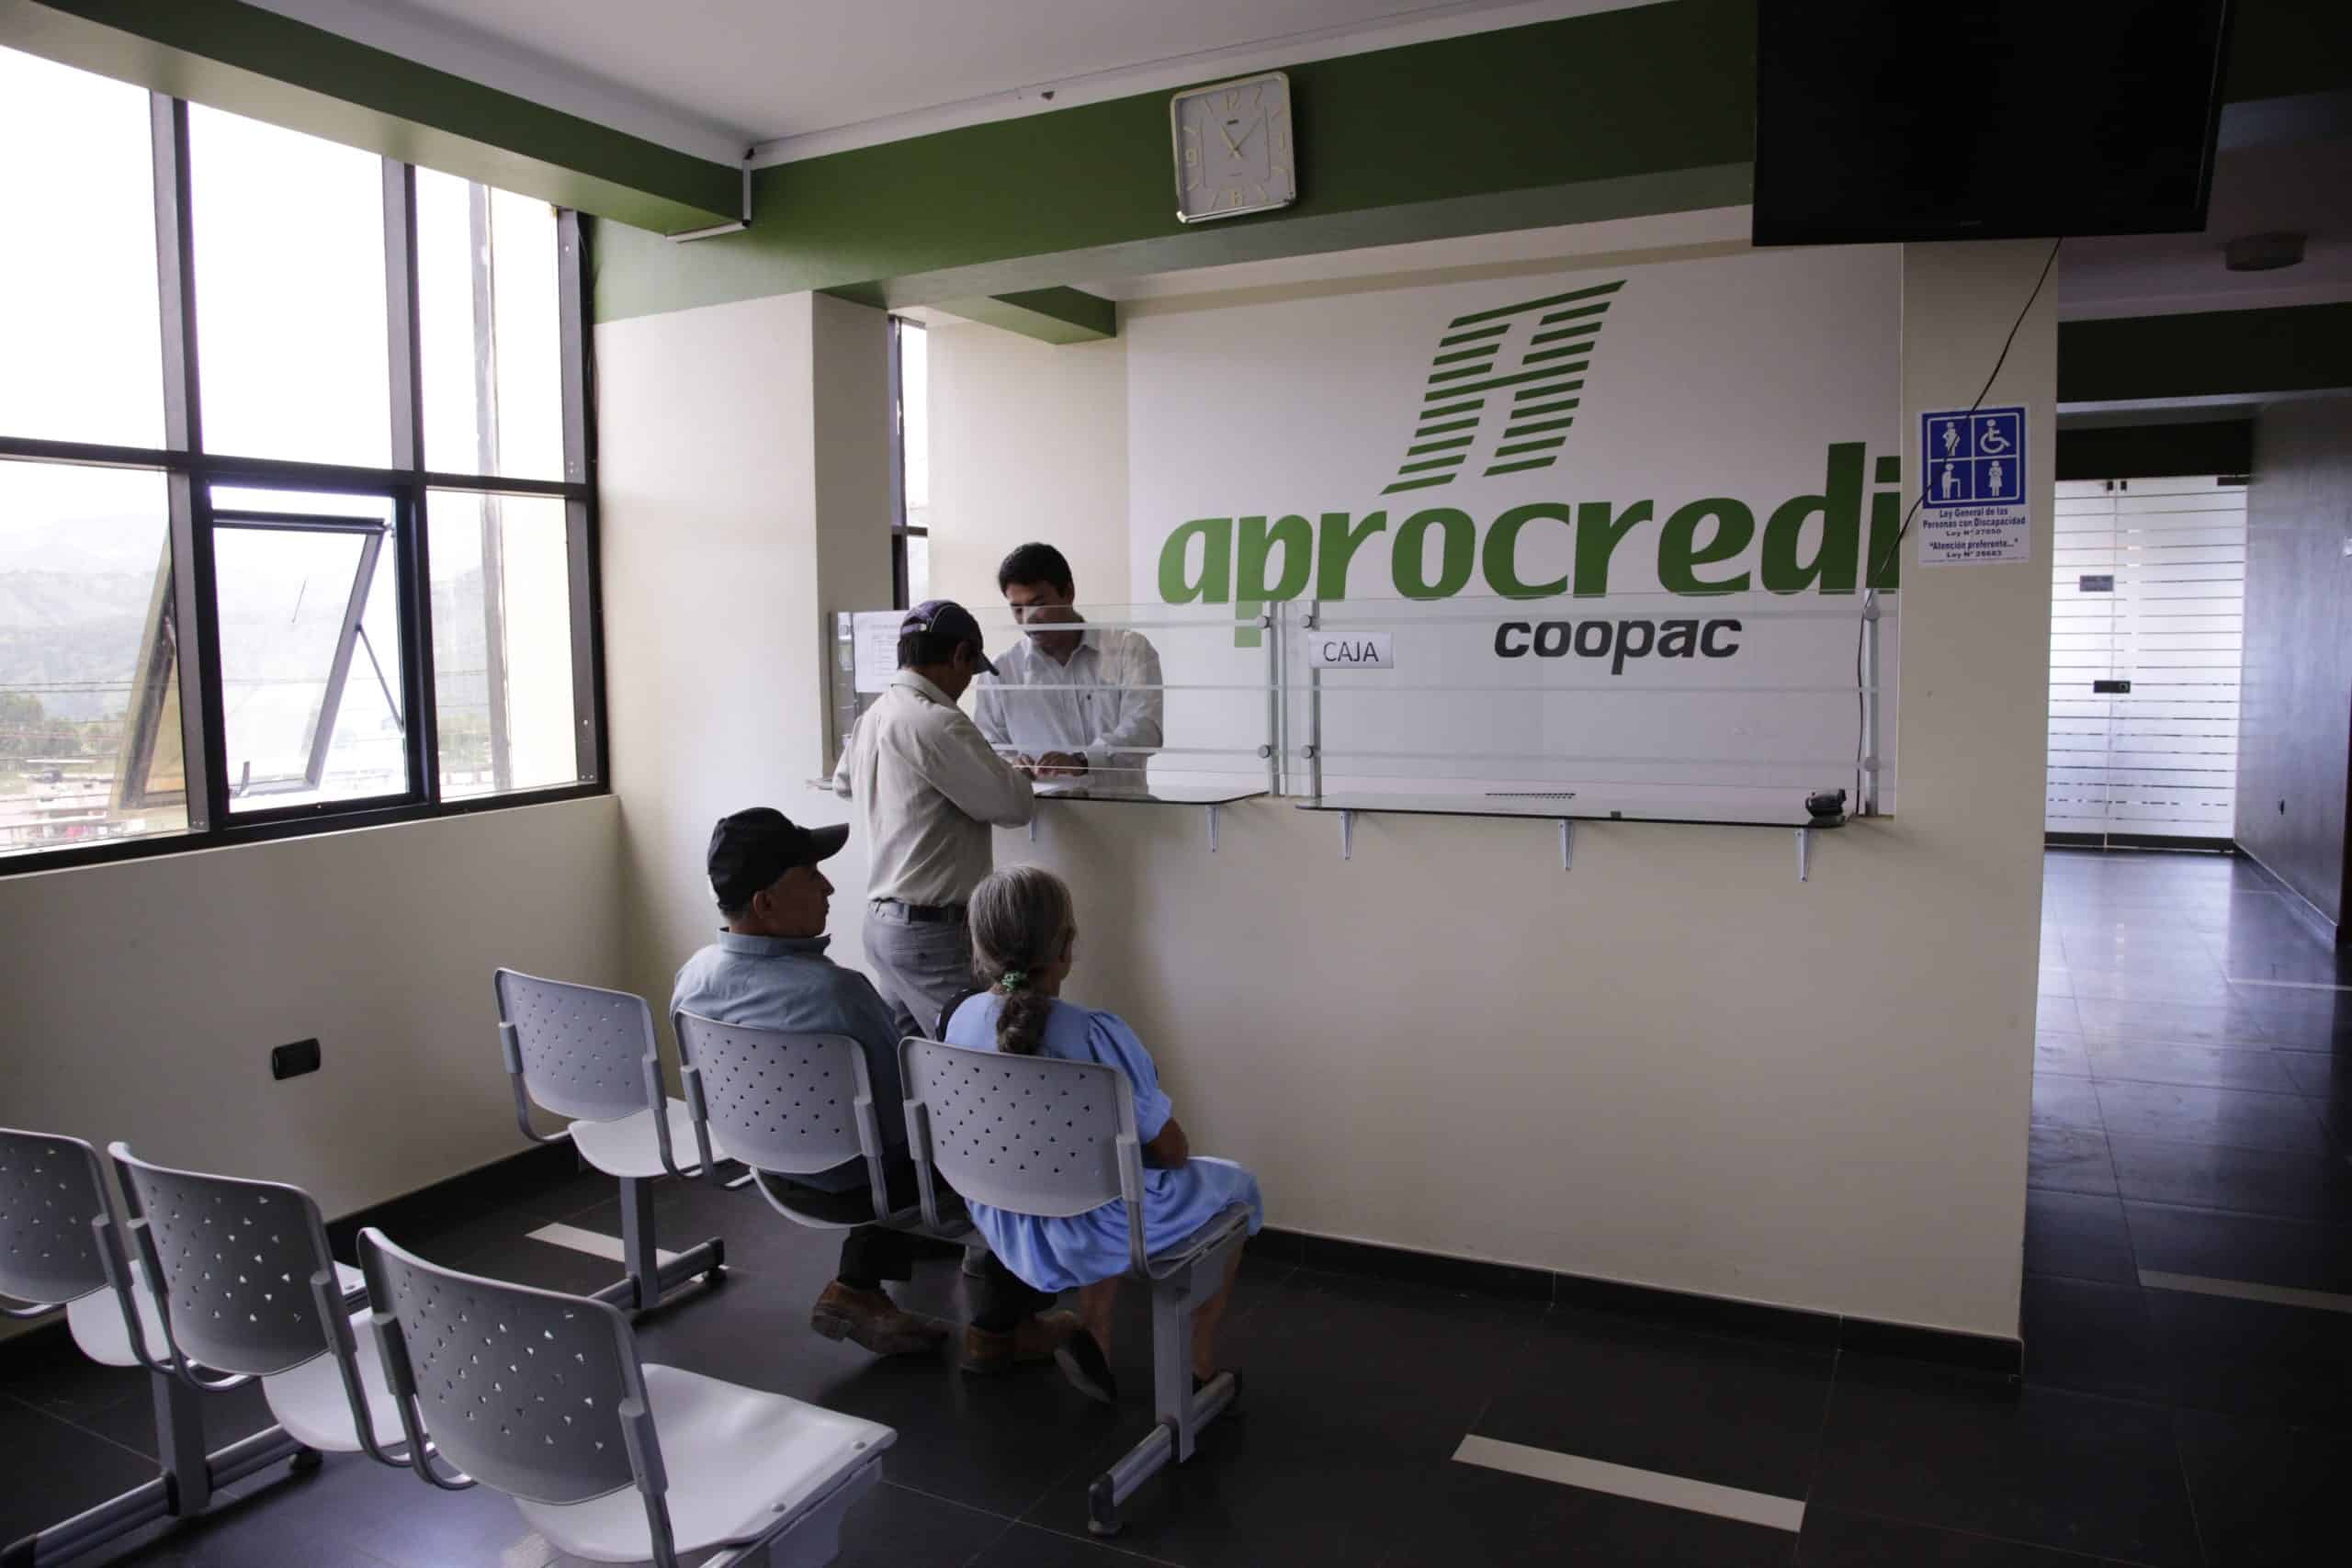 Miembros de APROCASSI, una cooperativa cafetera de Perú, hacen cola para solicitar un crédito del fondo de crédito interno de la cooperativa.